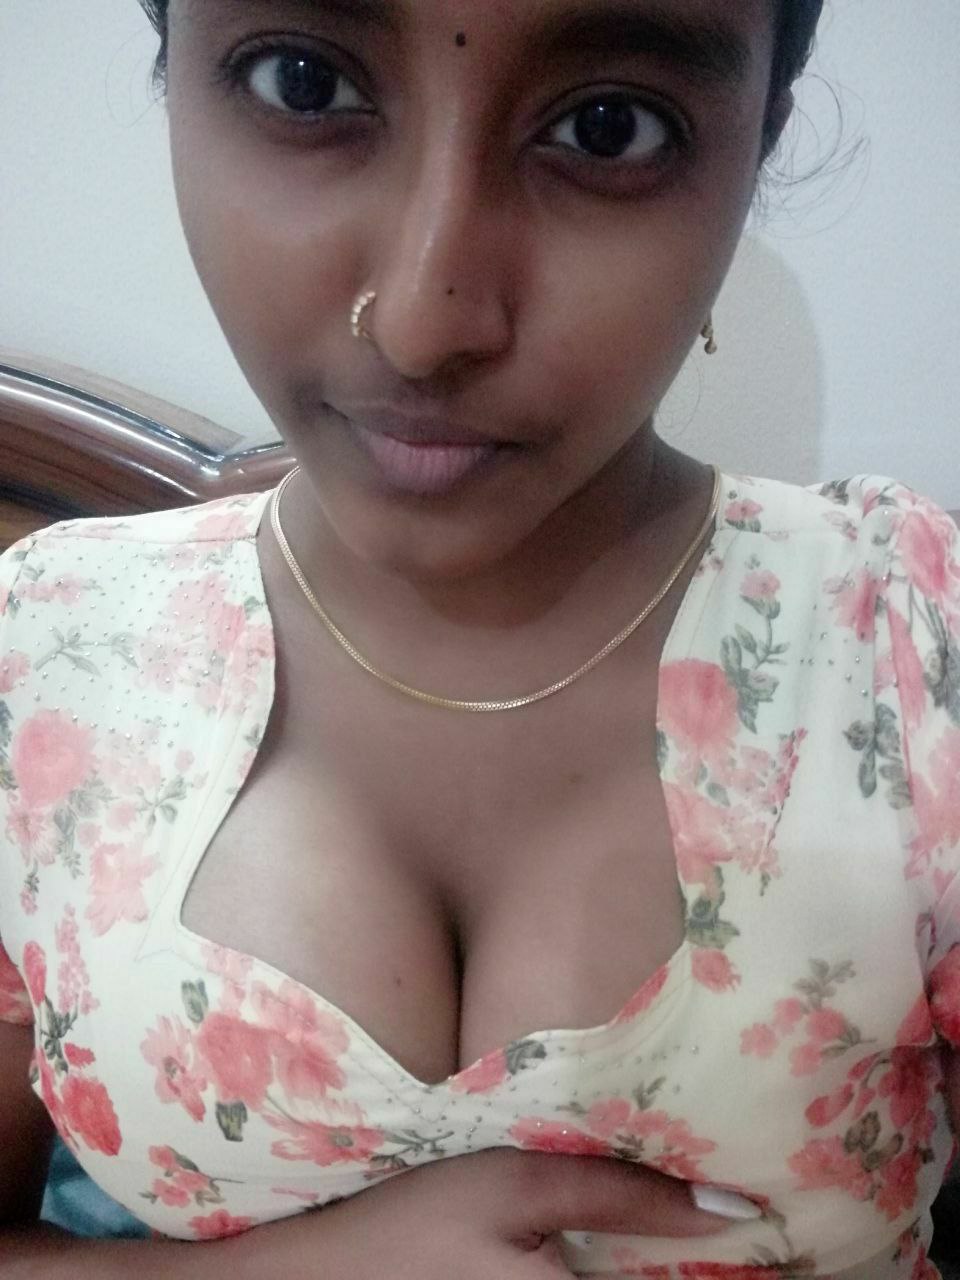 Kerala sex teen